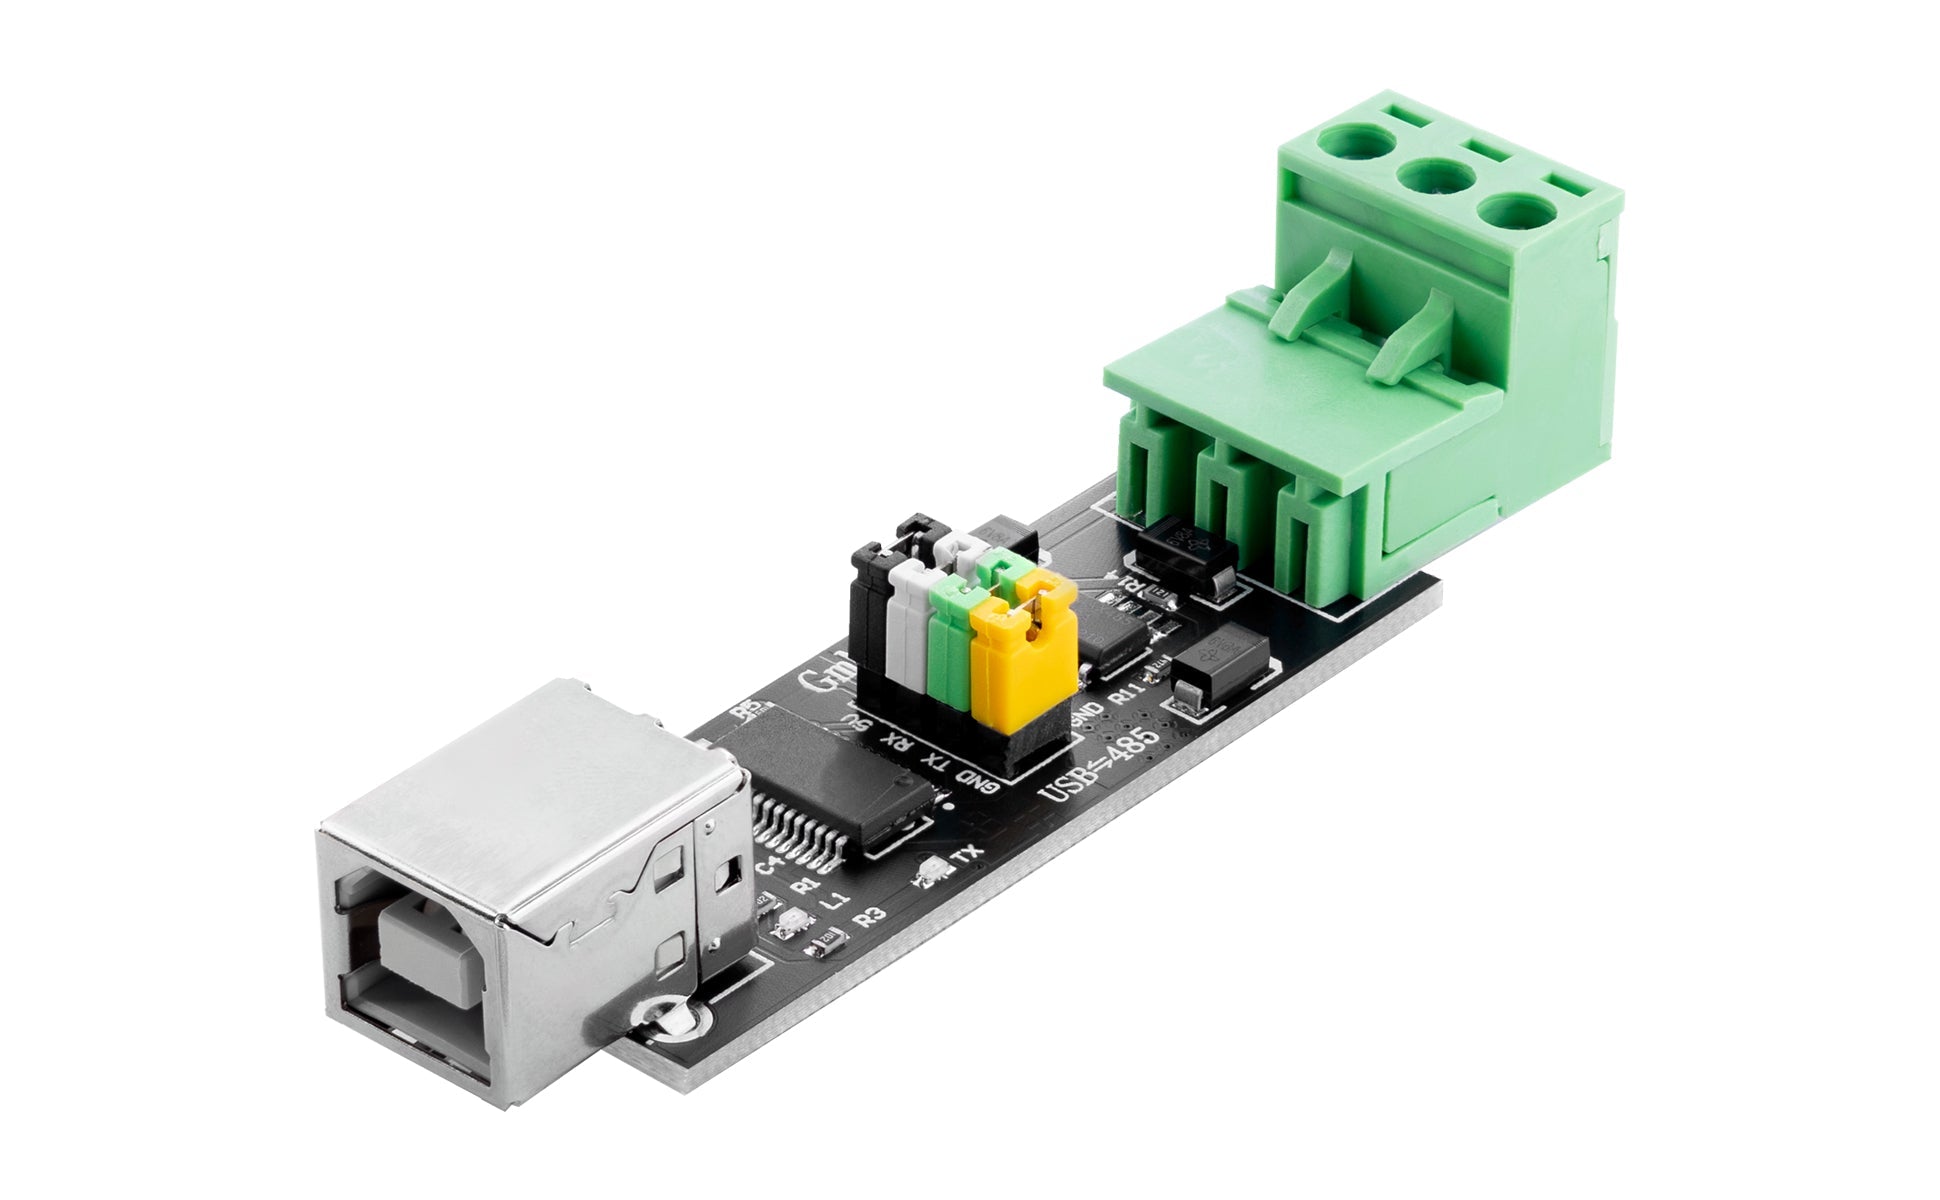 FT232 USB 2.0 zu TTL RS485 Seriell zu USB Adapter | Serieller Konverter Adapter Modul Interface Board - AZ-Delivery